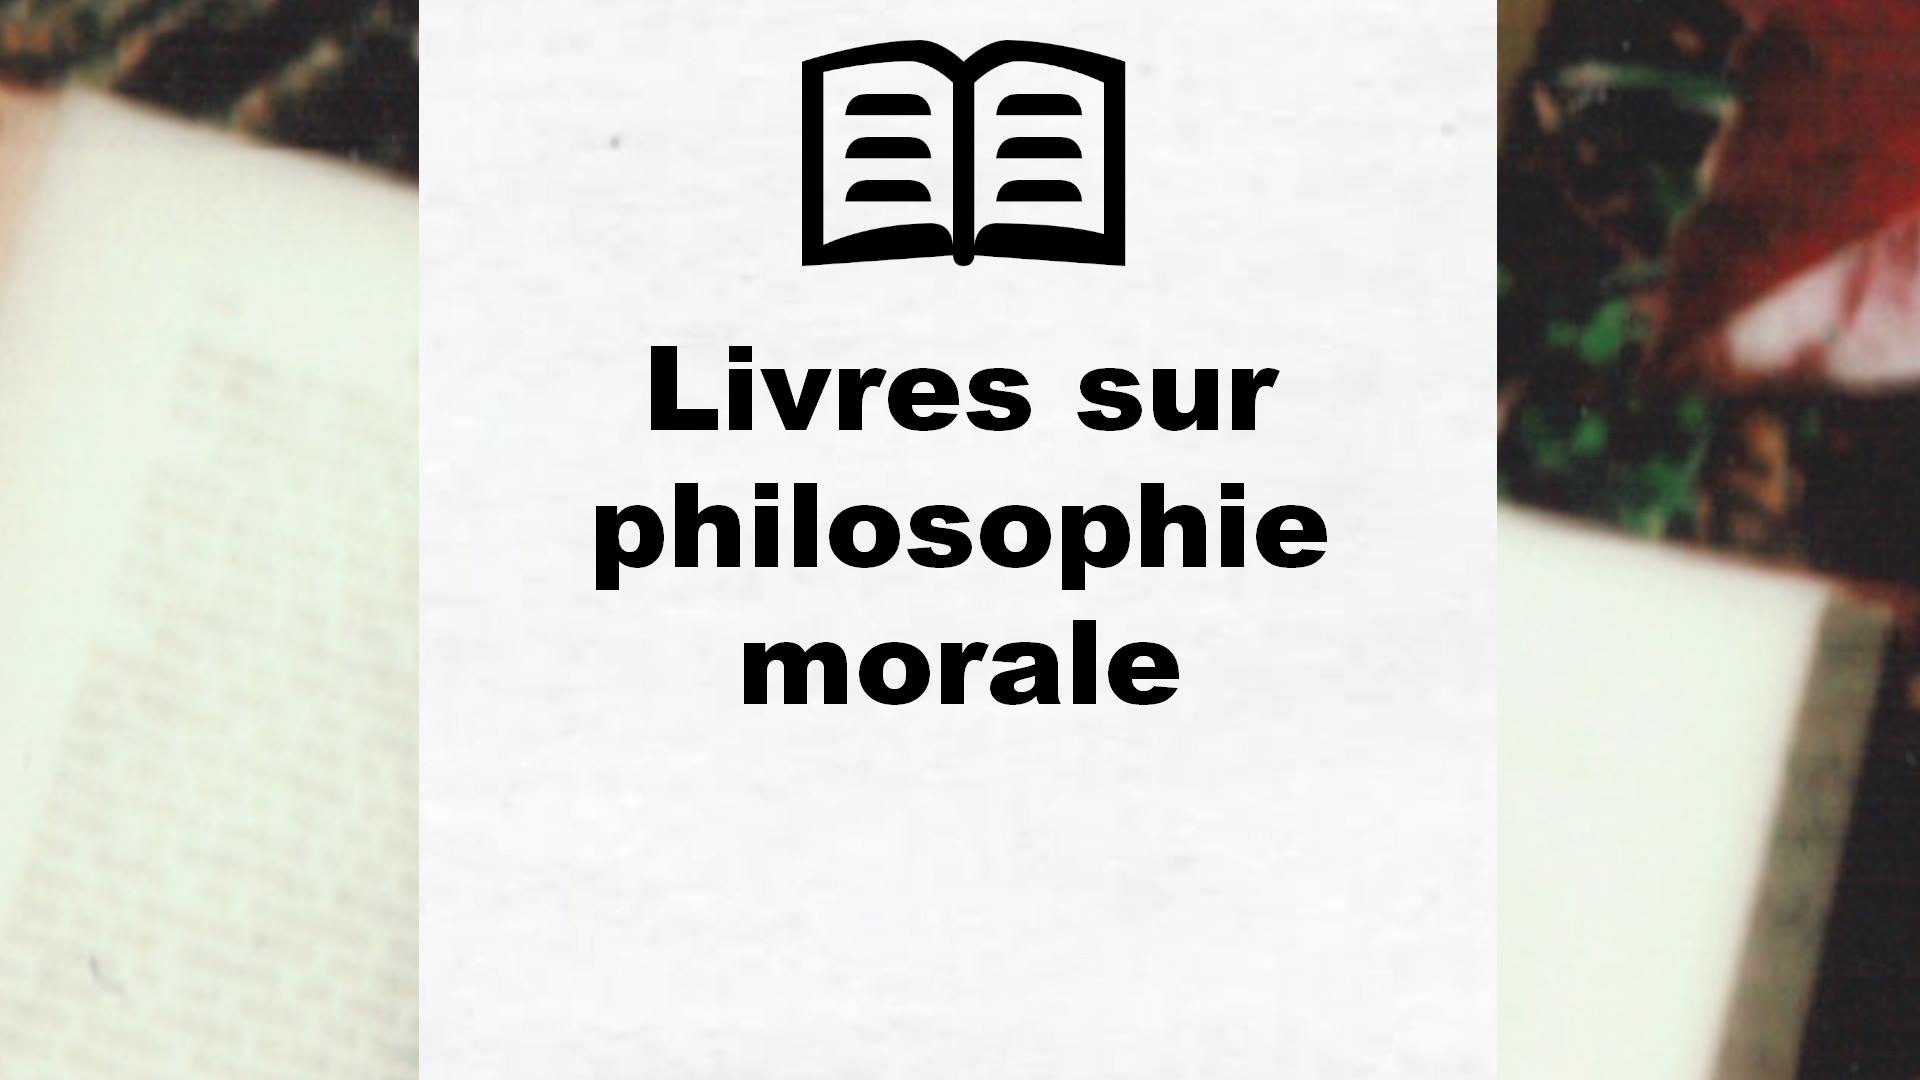 Livres sur philosophie morale